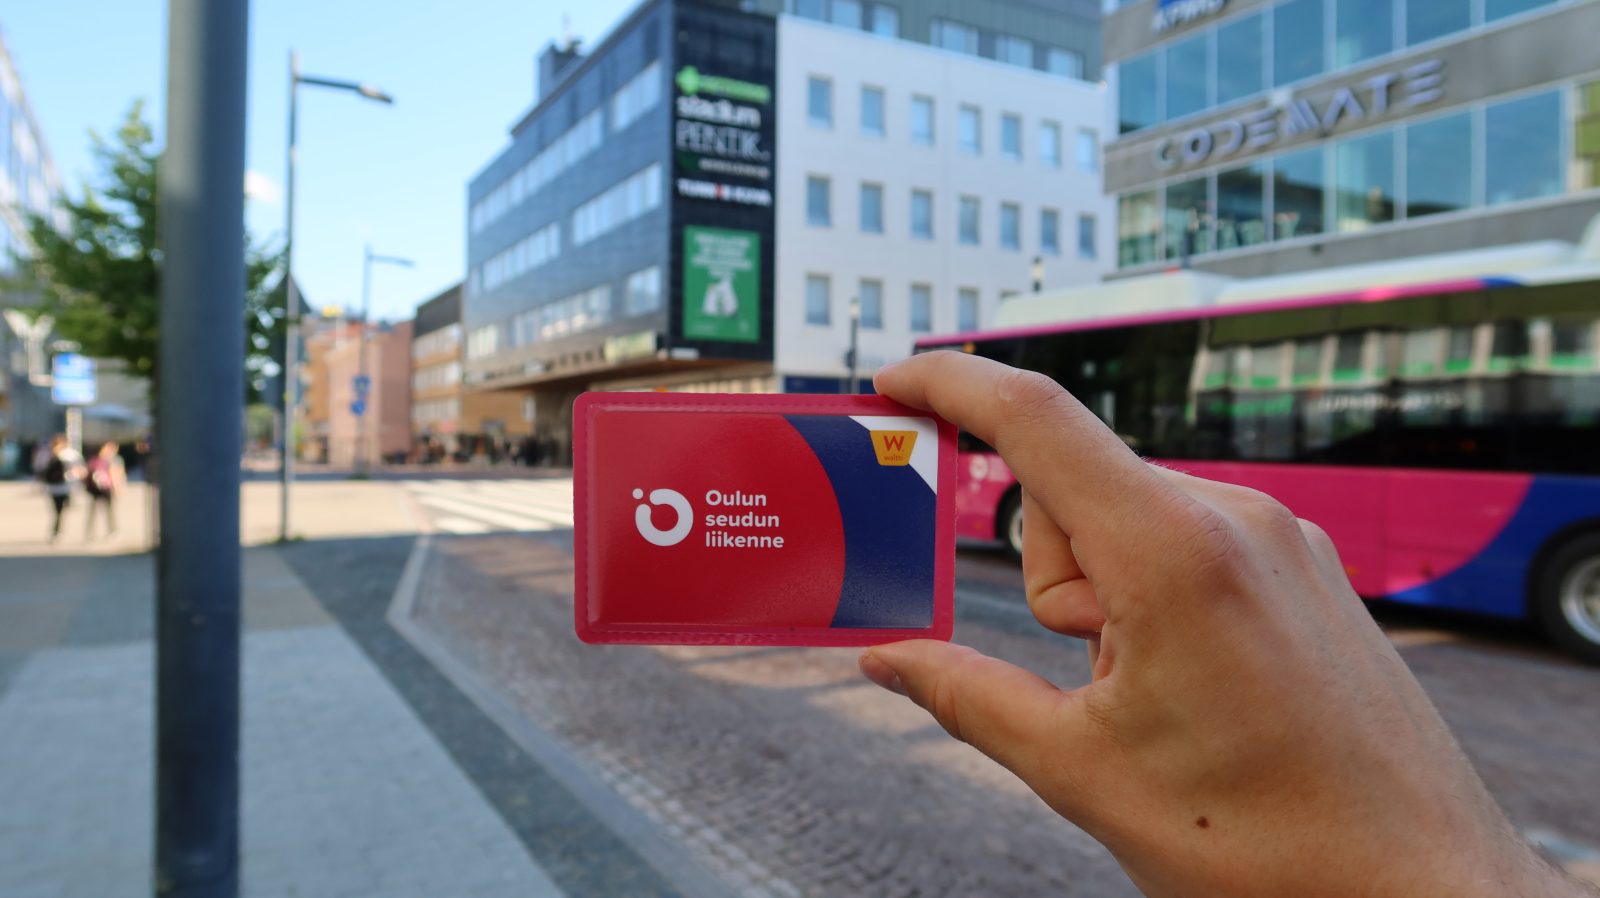 Henkilöllä kädessä Oulun seudun liikenteen matkakortti. Taustalla ajaa ohitse linja-auto.